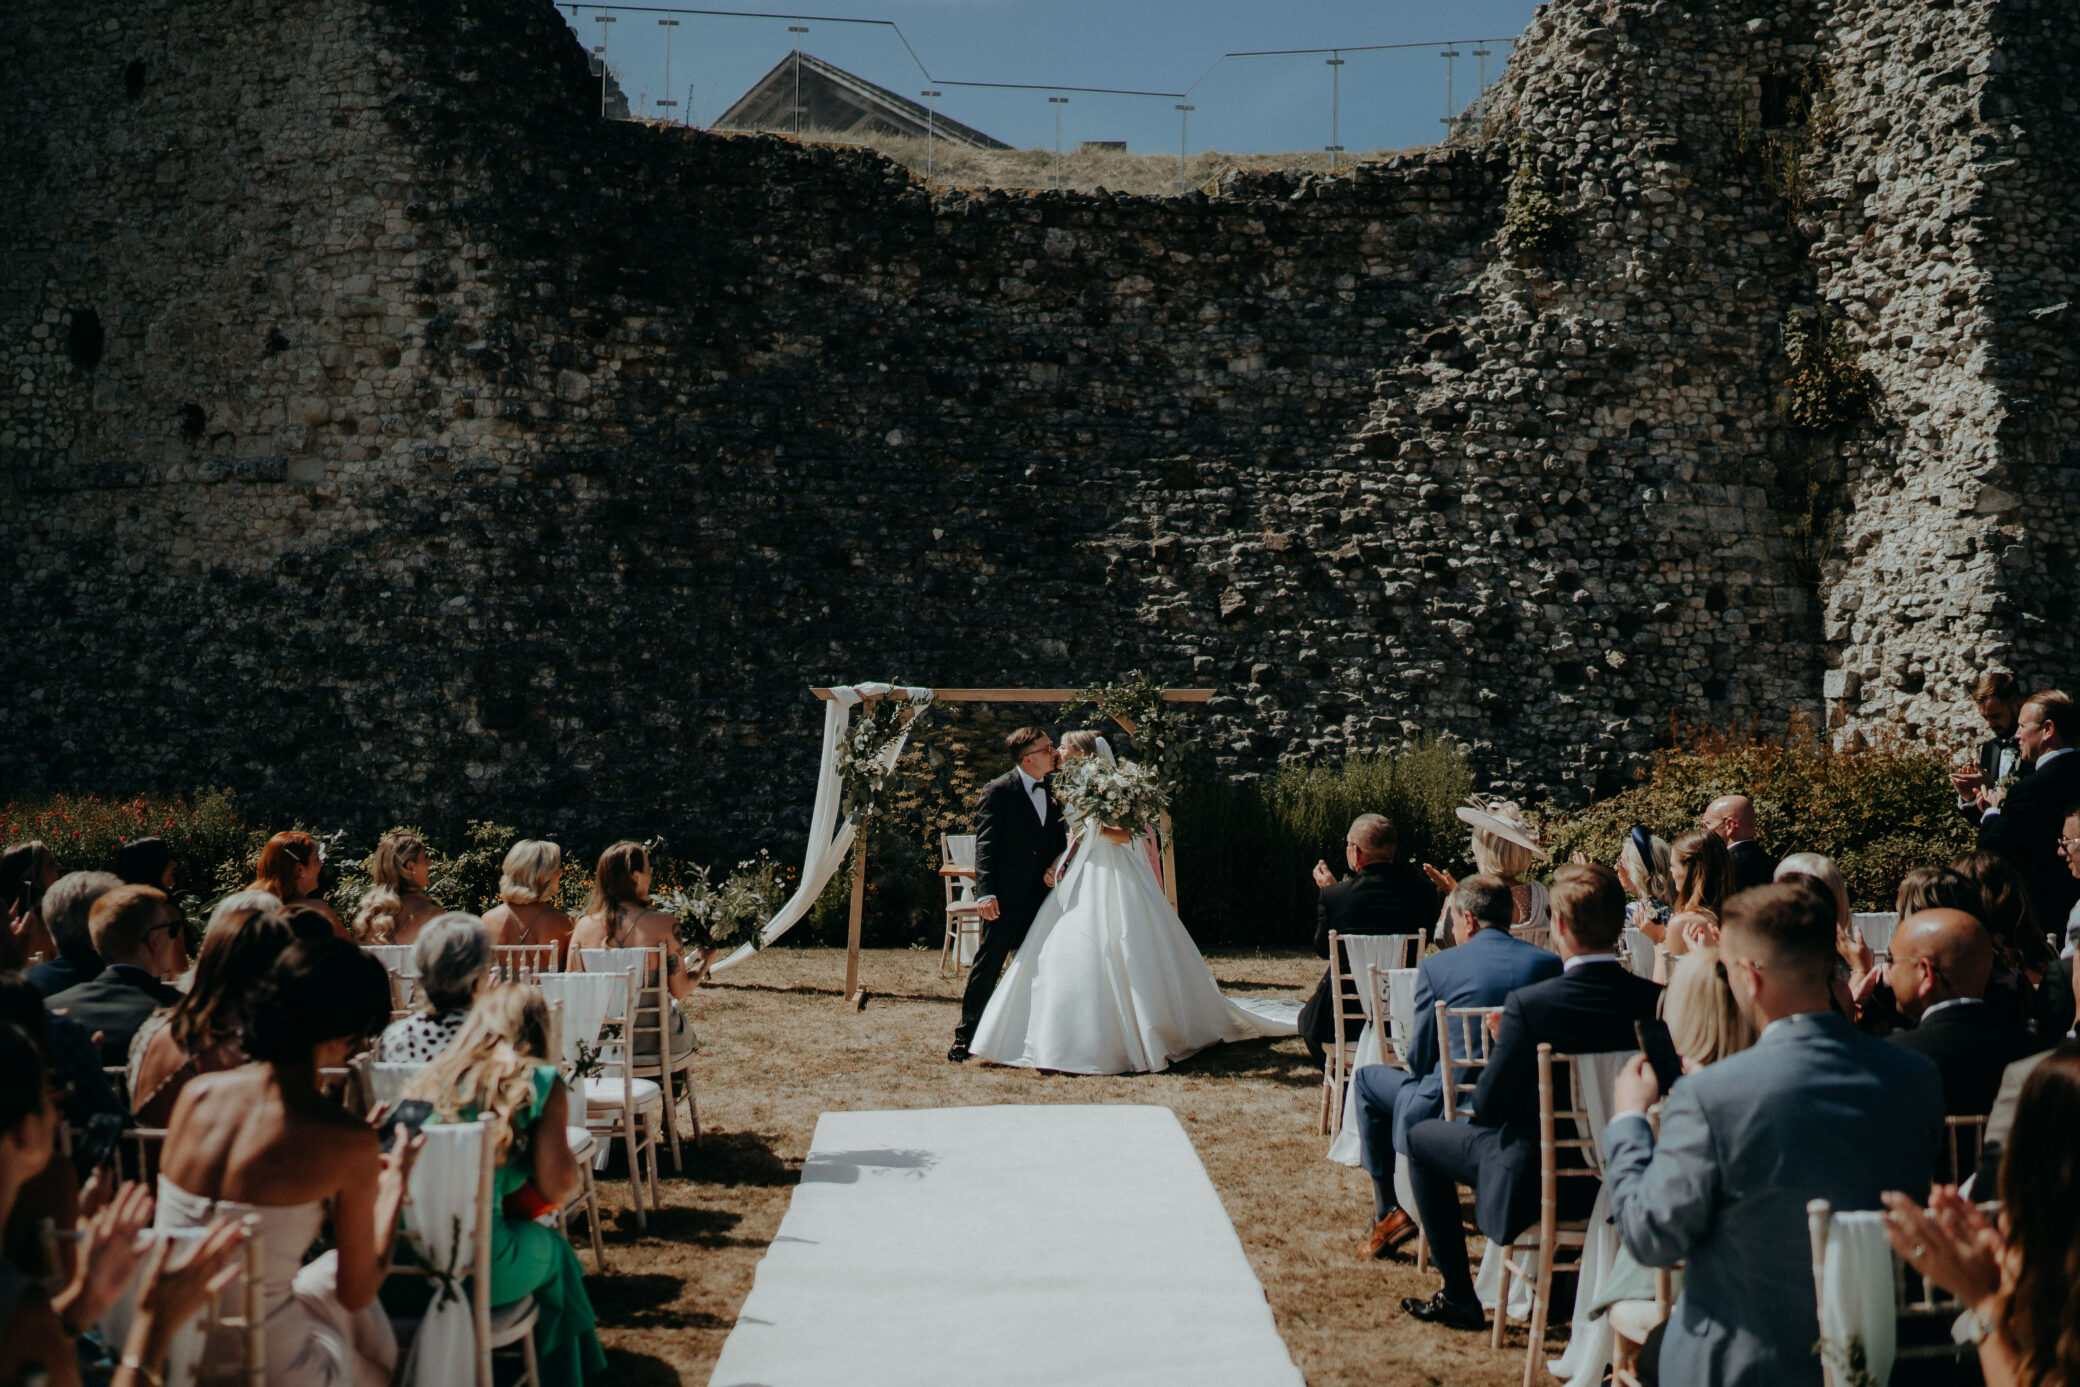 Outdoor wedding ceremony by Farnham Castle Keep in Surrey